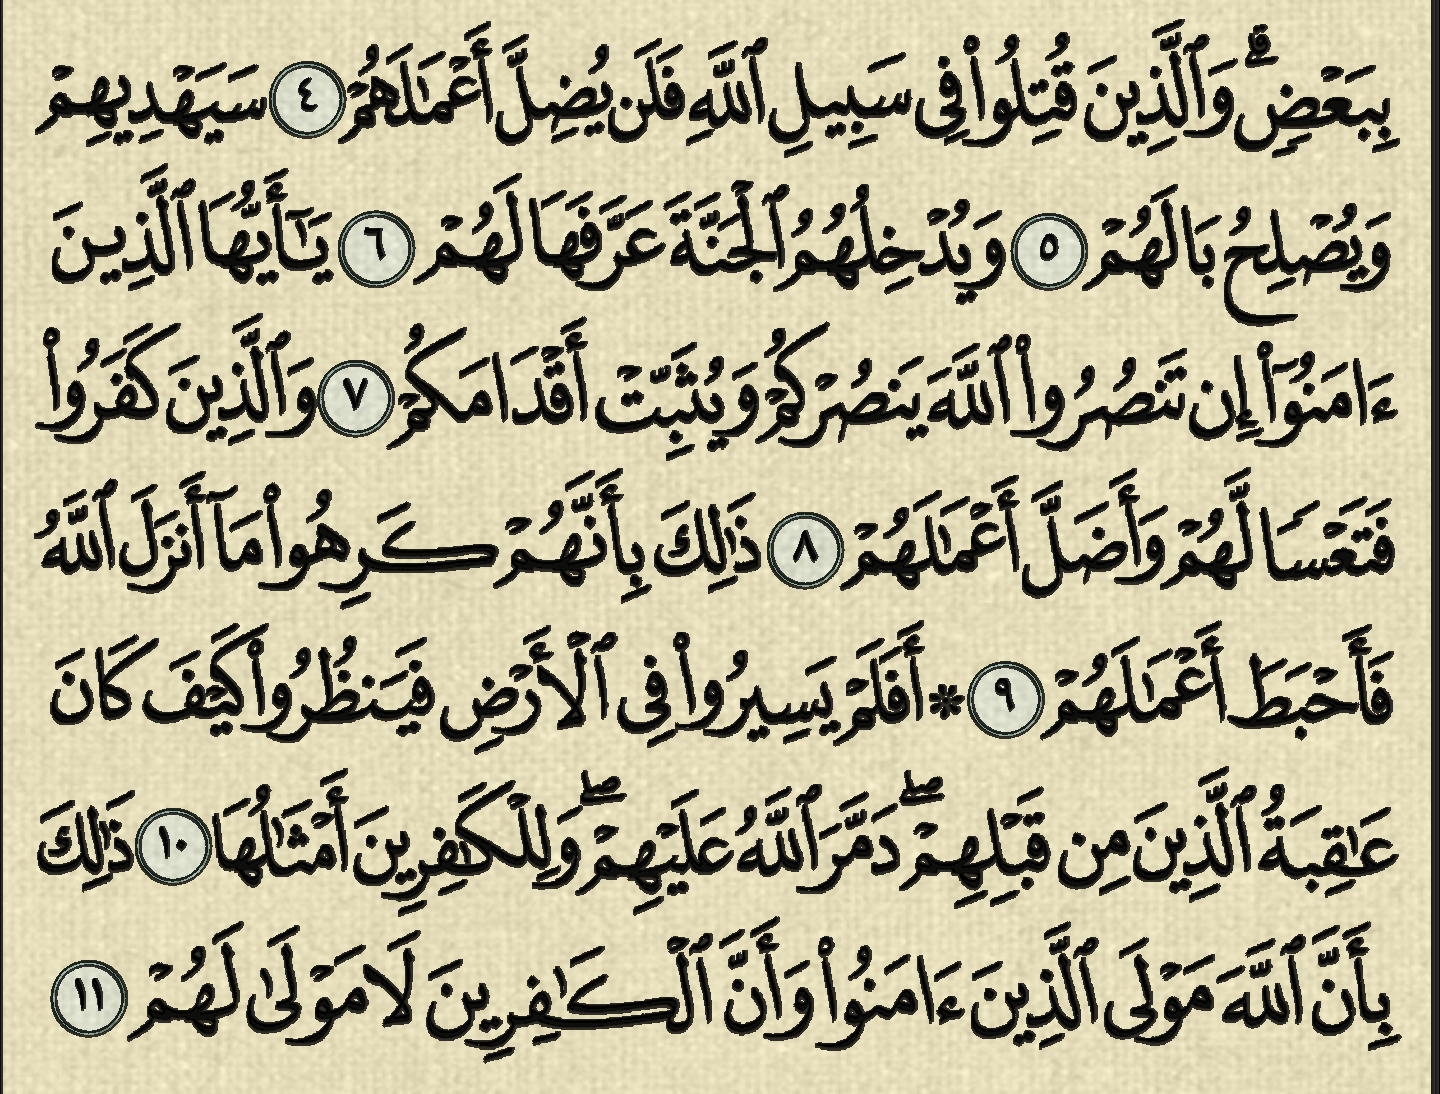 شرح, وتفسير, سورة محمد, surah muhammad, من الآية 1, إلى الآية 15,